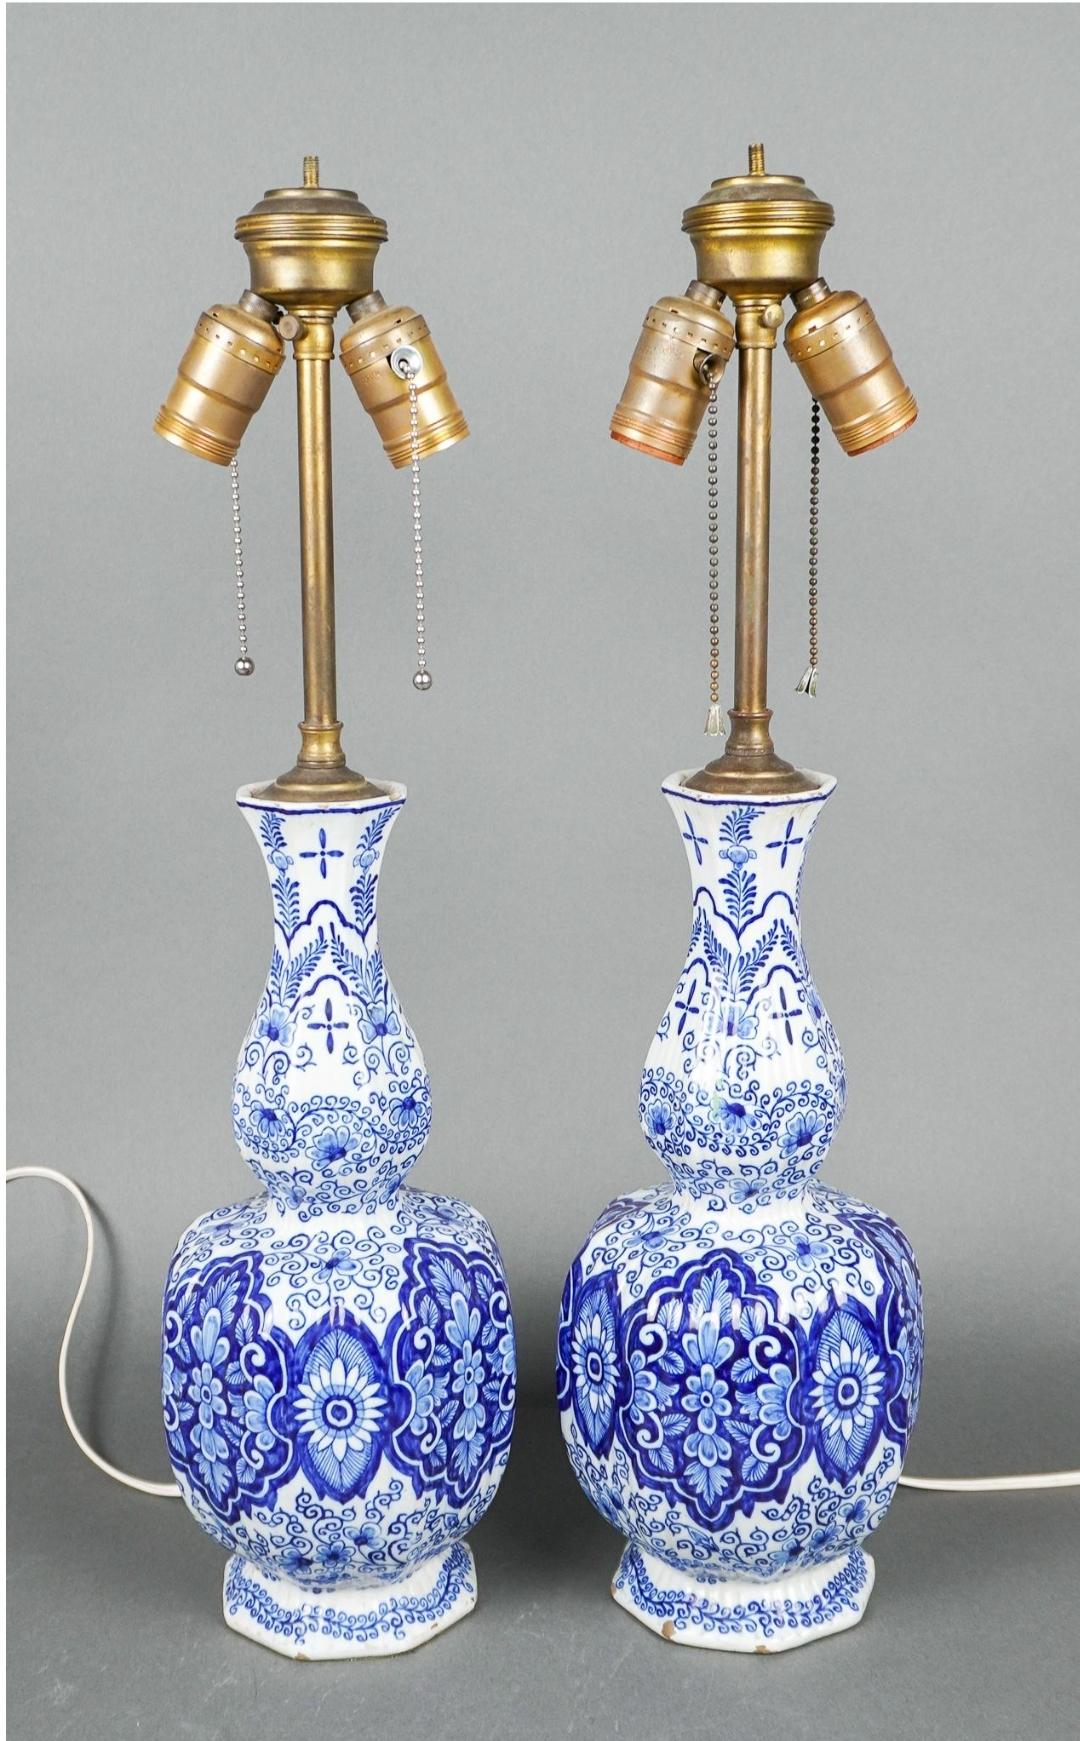 Une paire extrêmement rare et superbe de vases à pommeau en faïence de Delft hollandaise du 18e siècle, montés comme lampes, vers 1770 par Van Duijn.
Une palette de couleurs classiques bleu et blanc orne ce vase monté sur lampe abondamment décoré de